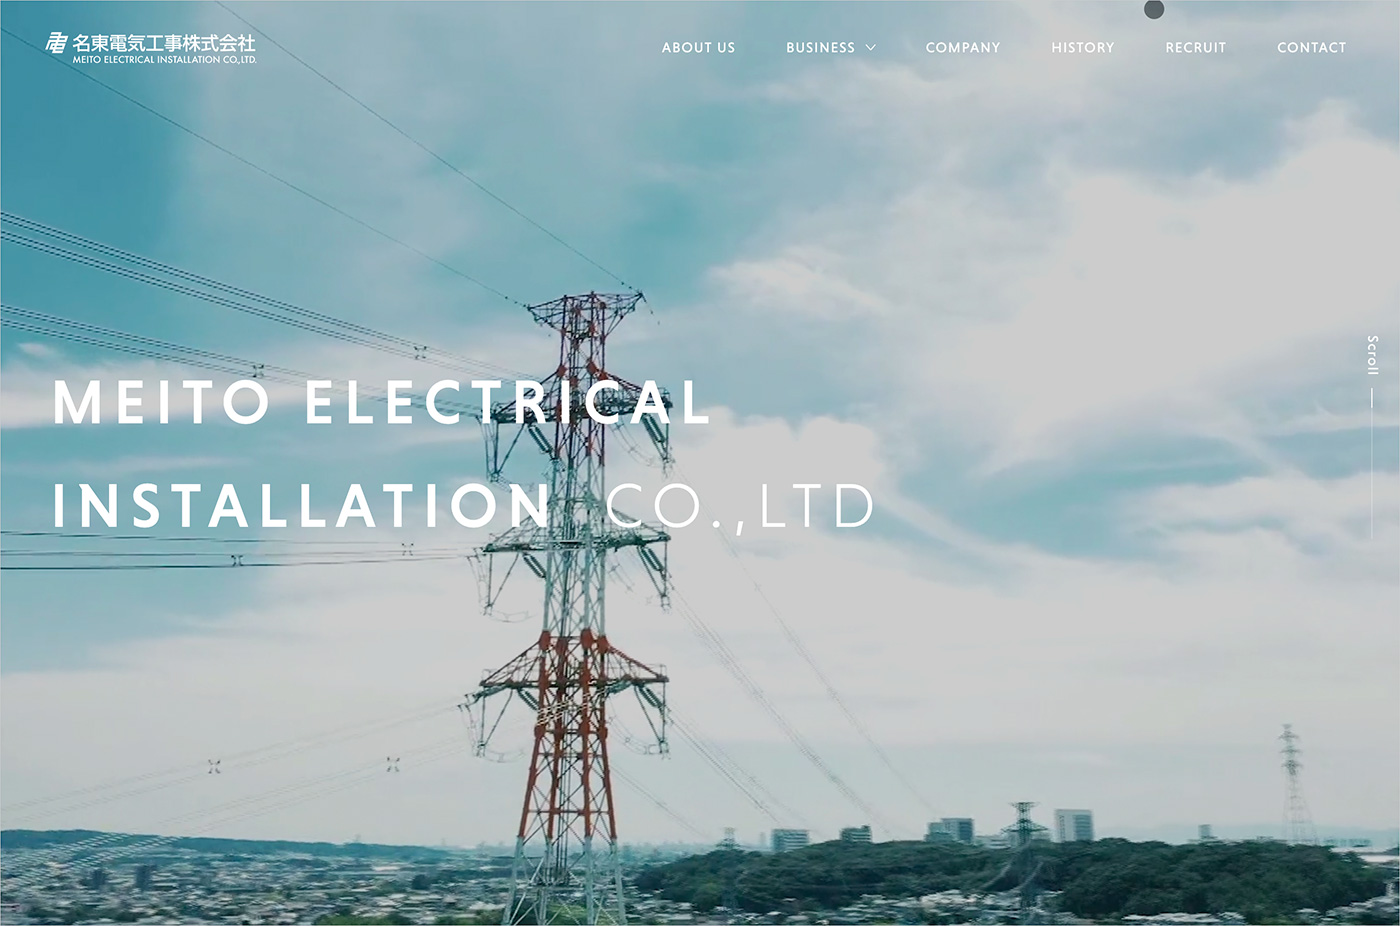 名東電気工事株式会社ウェブサイトの画面キャプチャ画像